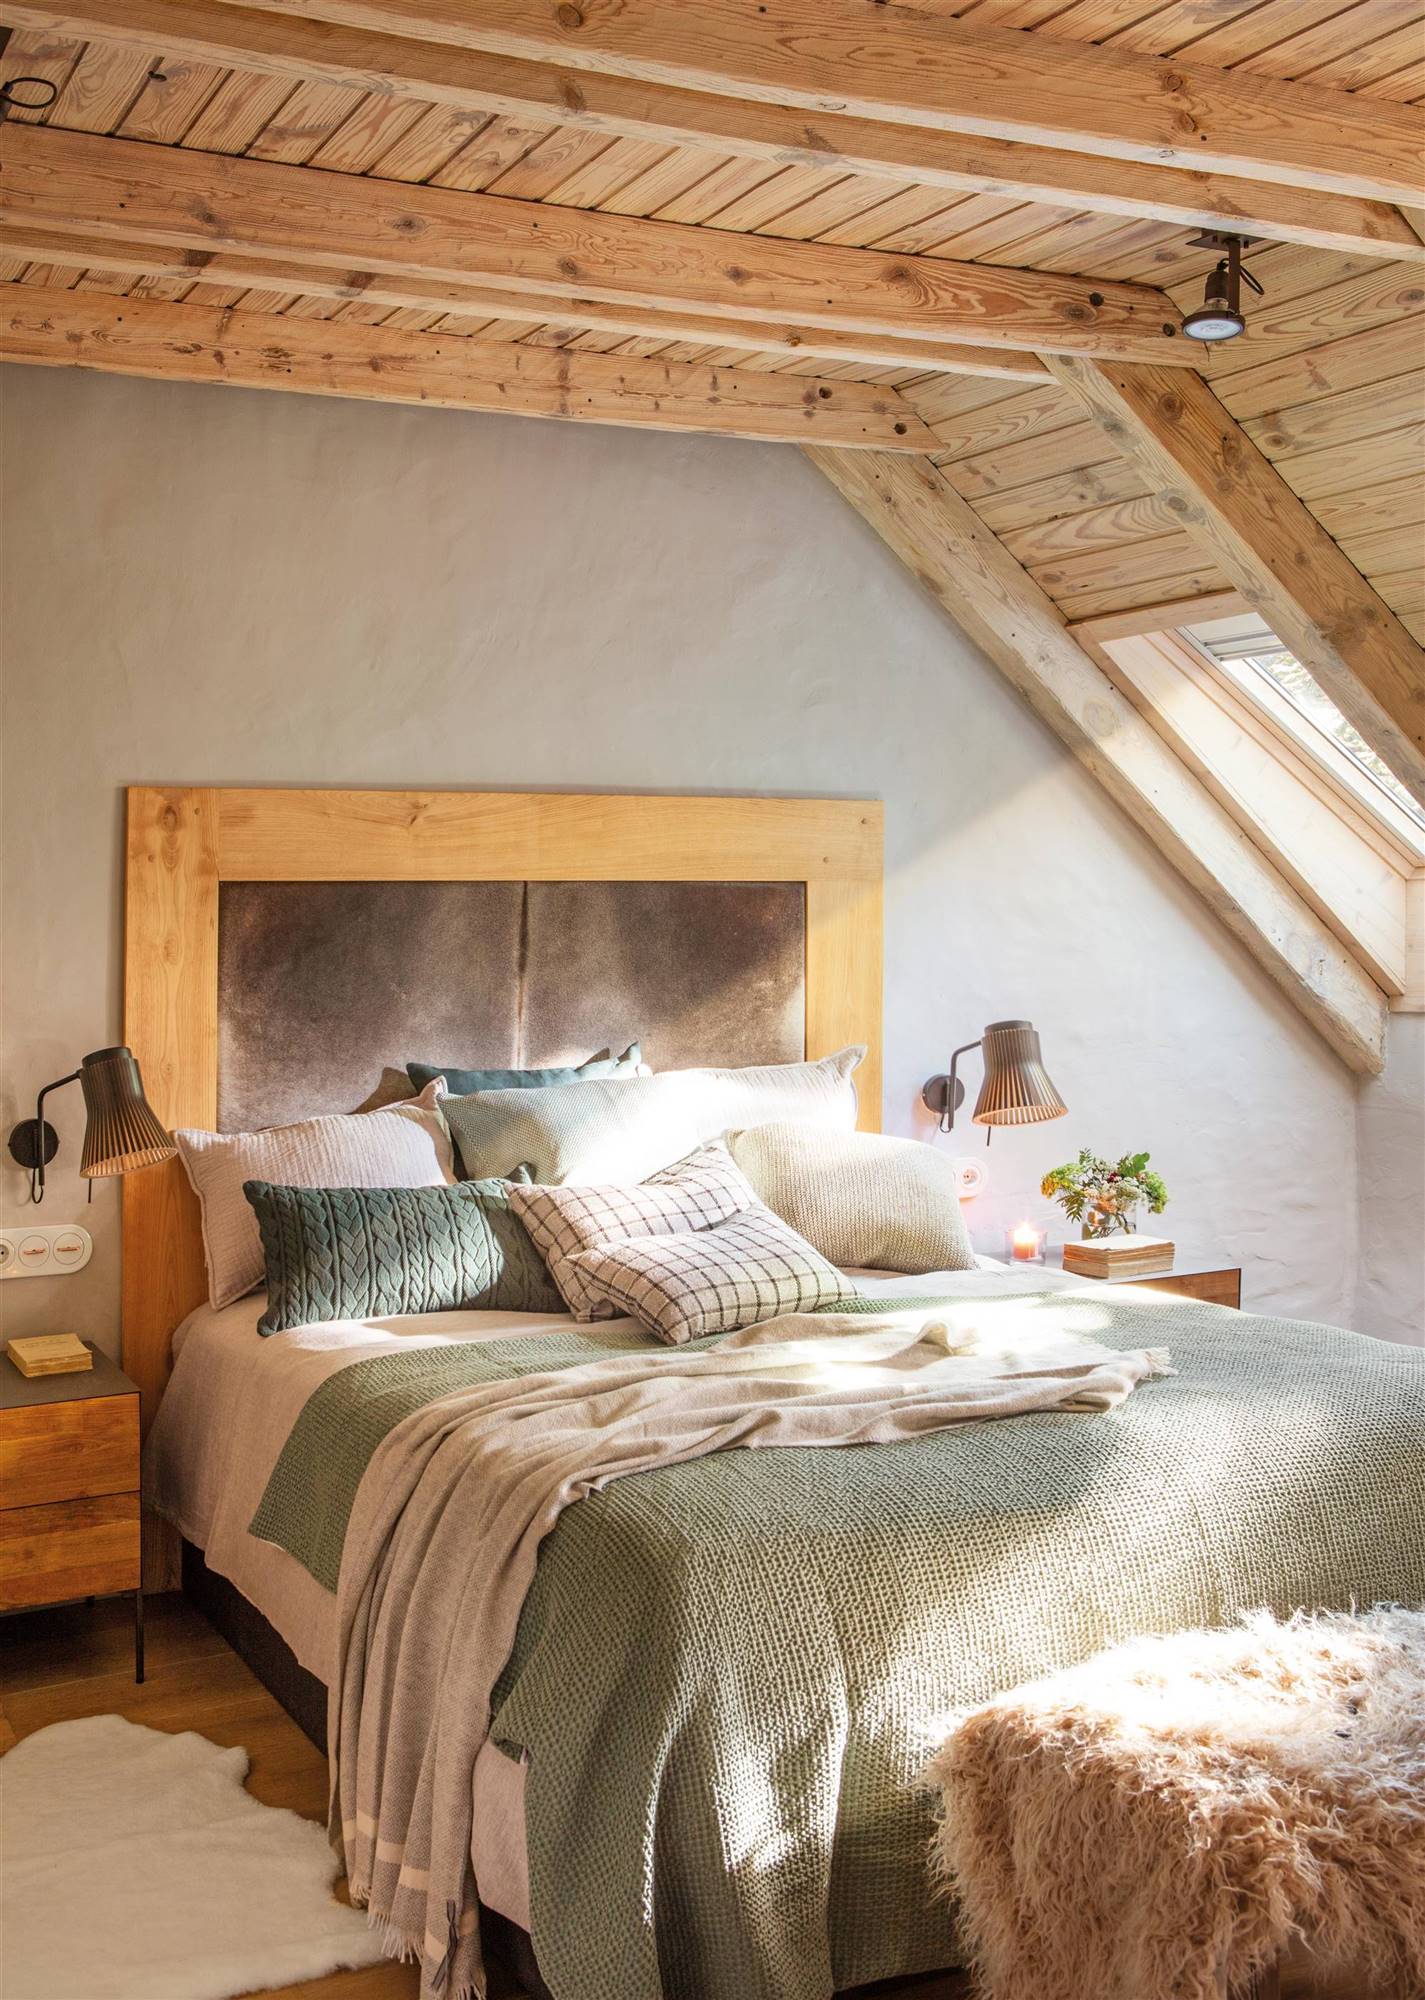 Un dormitorio abrigado por la madera, el cuero y las telas